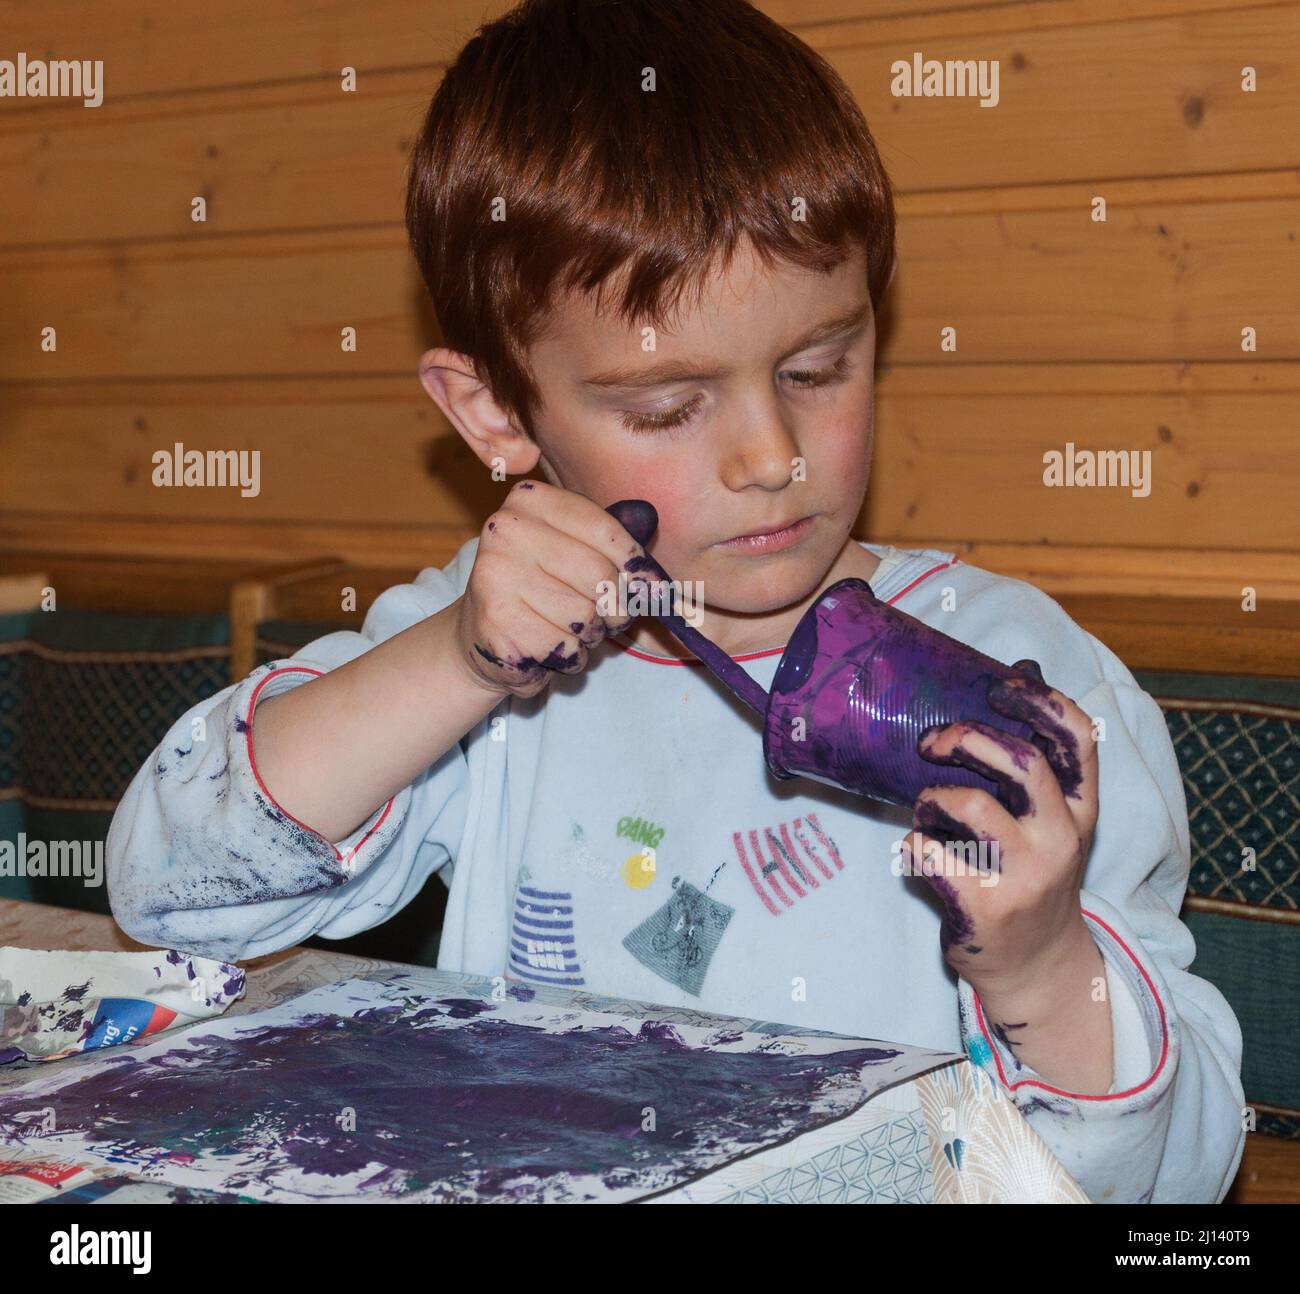 enfant peint se salir les mains avec de la peinture Banque D'Images